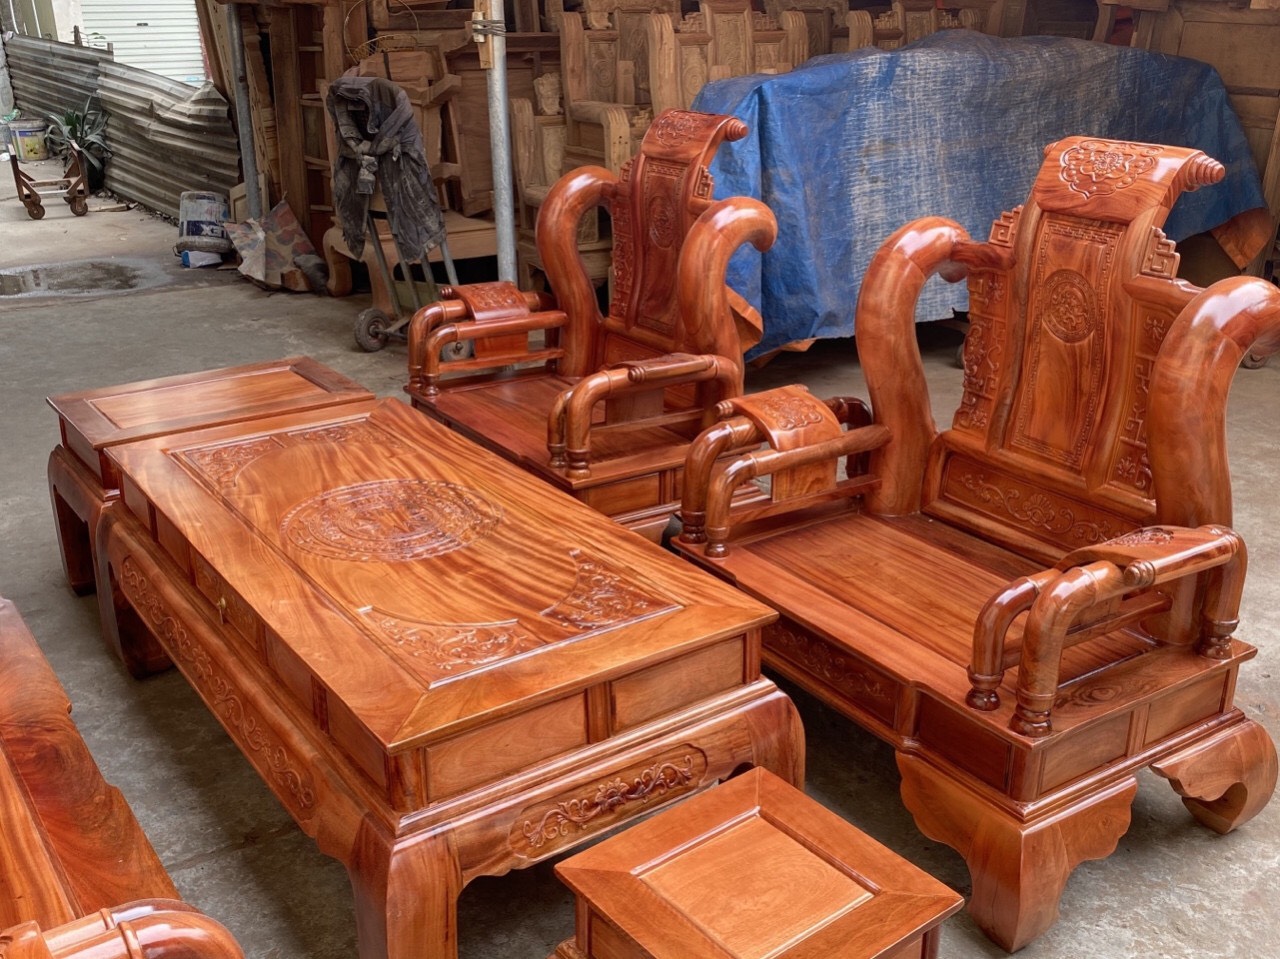 Bộ bàn ghế Tần Thủy Hoàng gỗ xà cừ: Bộ bàn ghế Tần Thủy Hoàng gỗ xà cừ là một tuyệt phẩm của nghệ thuật mộc. Với sự kết hợp hoàn hảo giữa chất liệu gỗ xà cừ cứng cáp và thiết kế tinh xảo, bộ bàn ghế này là một lựa chọn hoàn hảo cho những ai ưa thích phong cách cổ điển. Đến với đồ gỗ Mộc Xưa, bạn sẽ được sở hữu sản phẩm cao cấp, chất lượng và đẳng cấp.